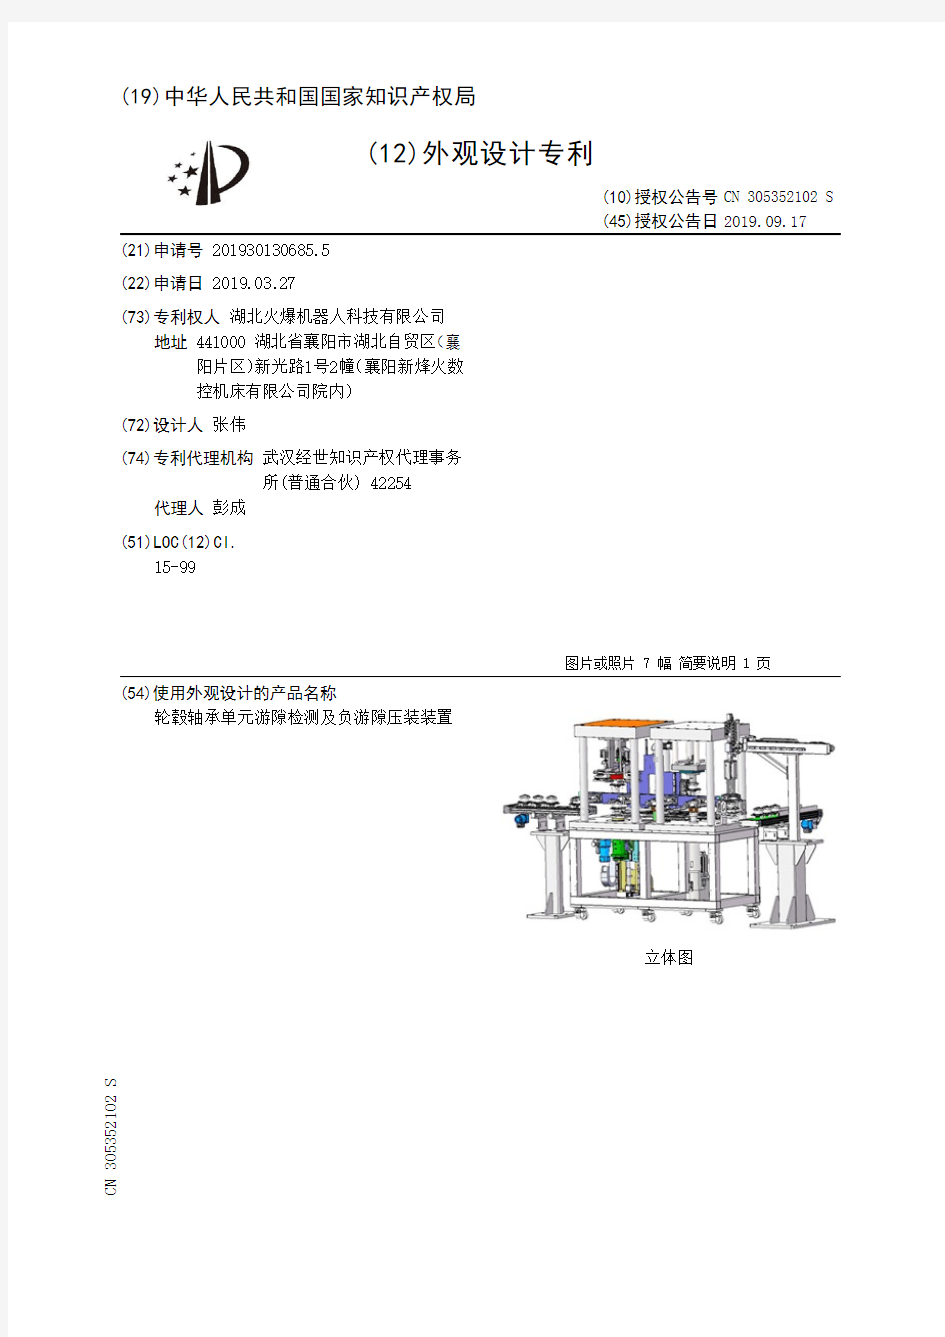 【CN305352102S】轮毂轴承单元游隙检测及负游隙压装装置【专利】